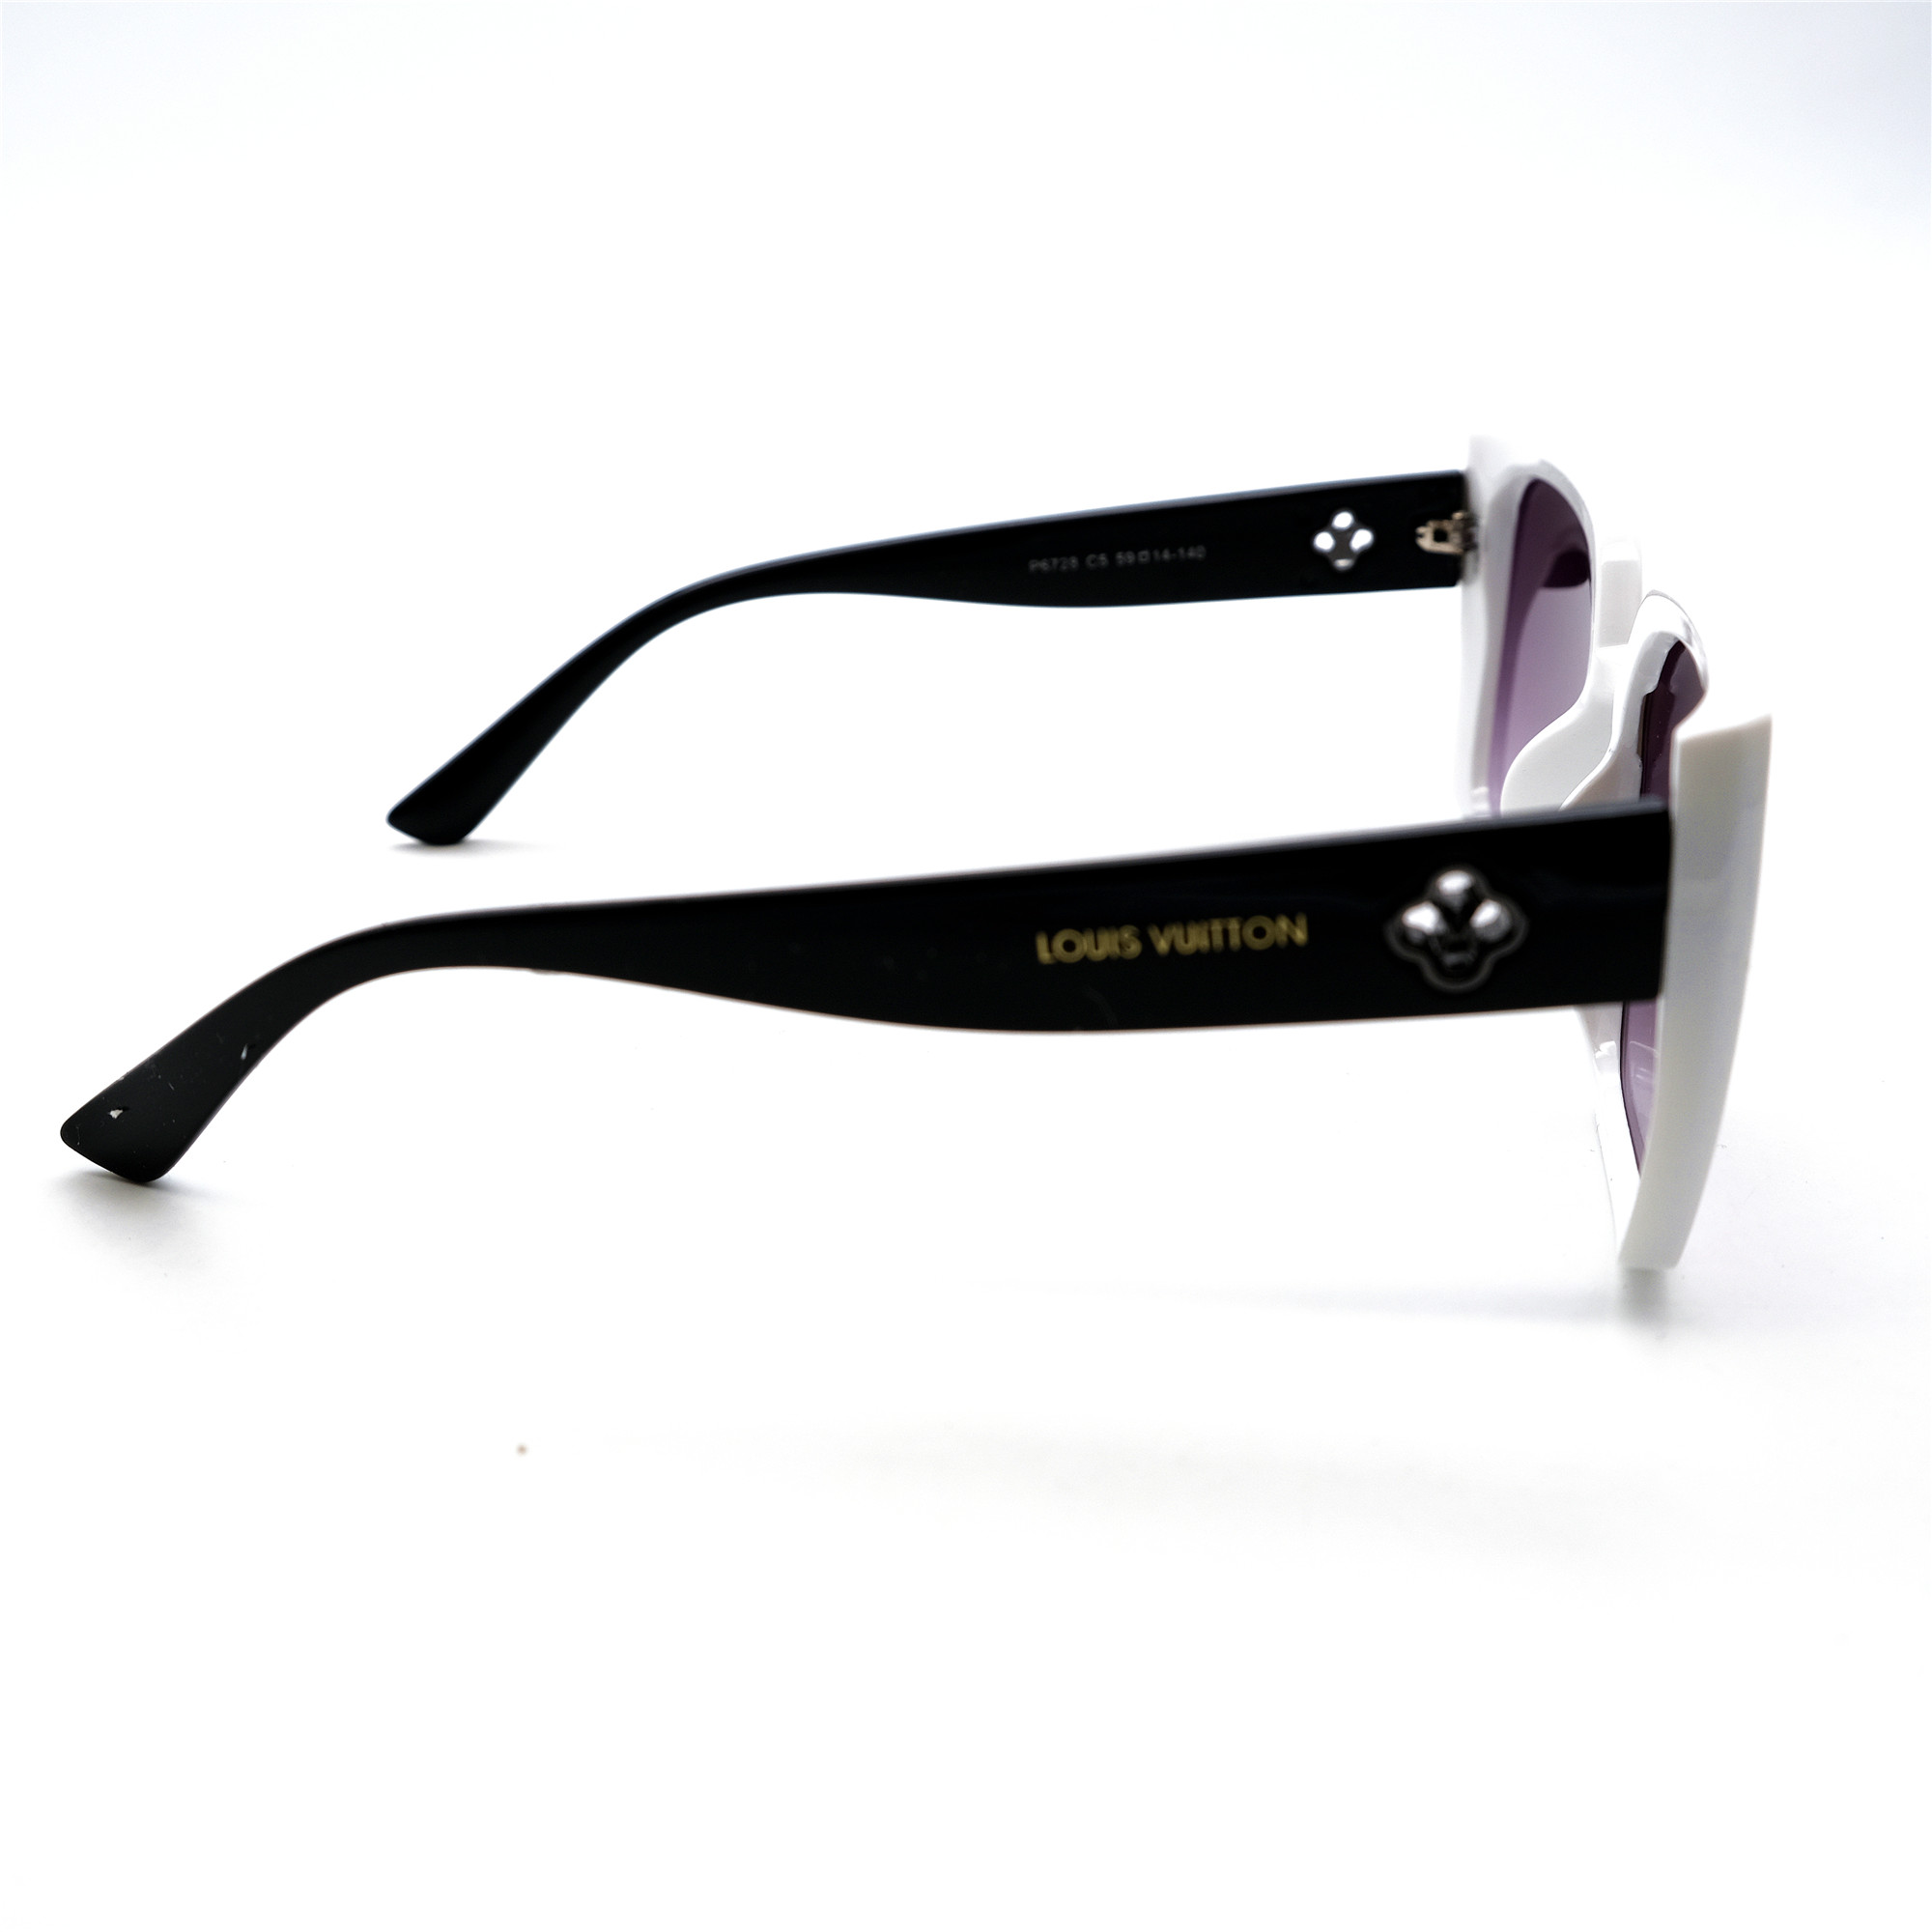  Солнцезащитные очки картинка Женские Брендовые Polarized Классический P6728-C5 